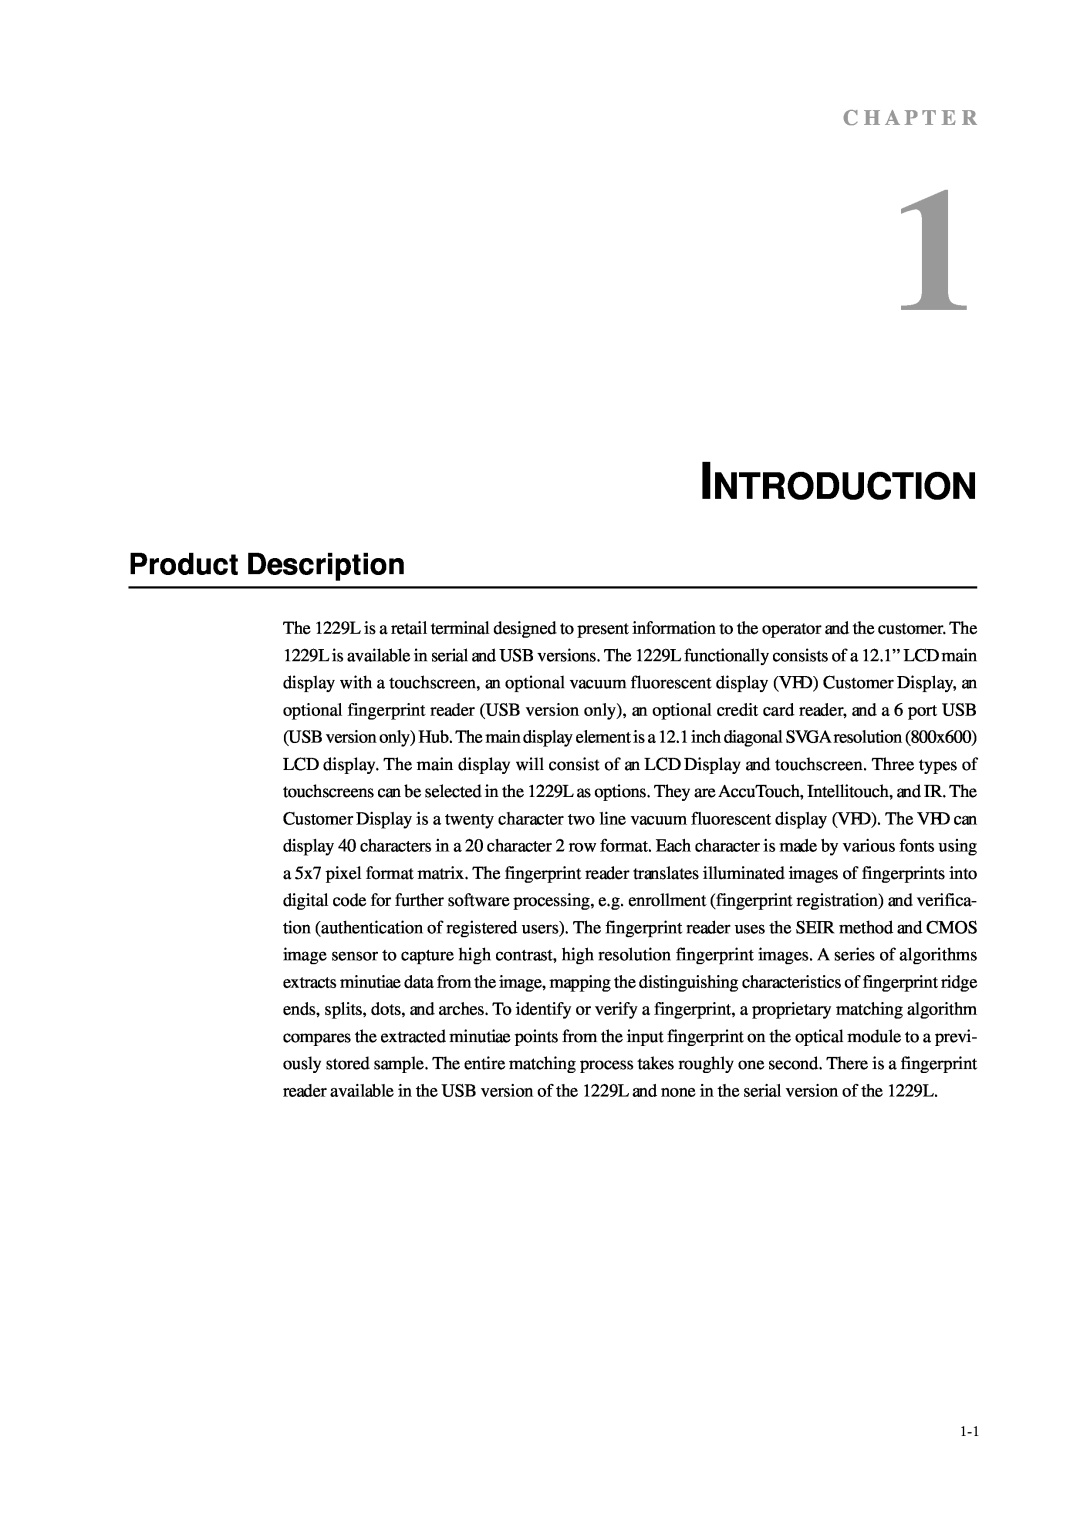 Tyco Electronics 1229L manual Introduction, Product Description, C H A P T E R 